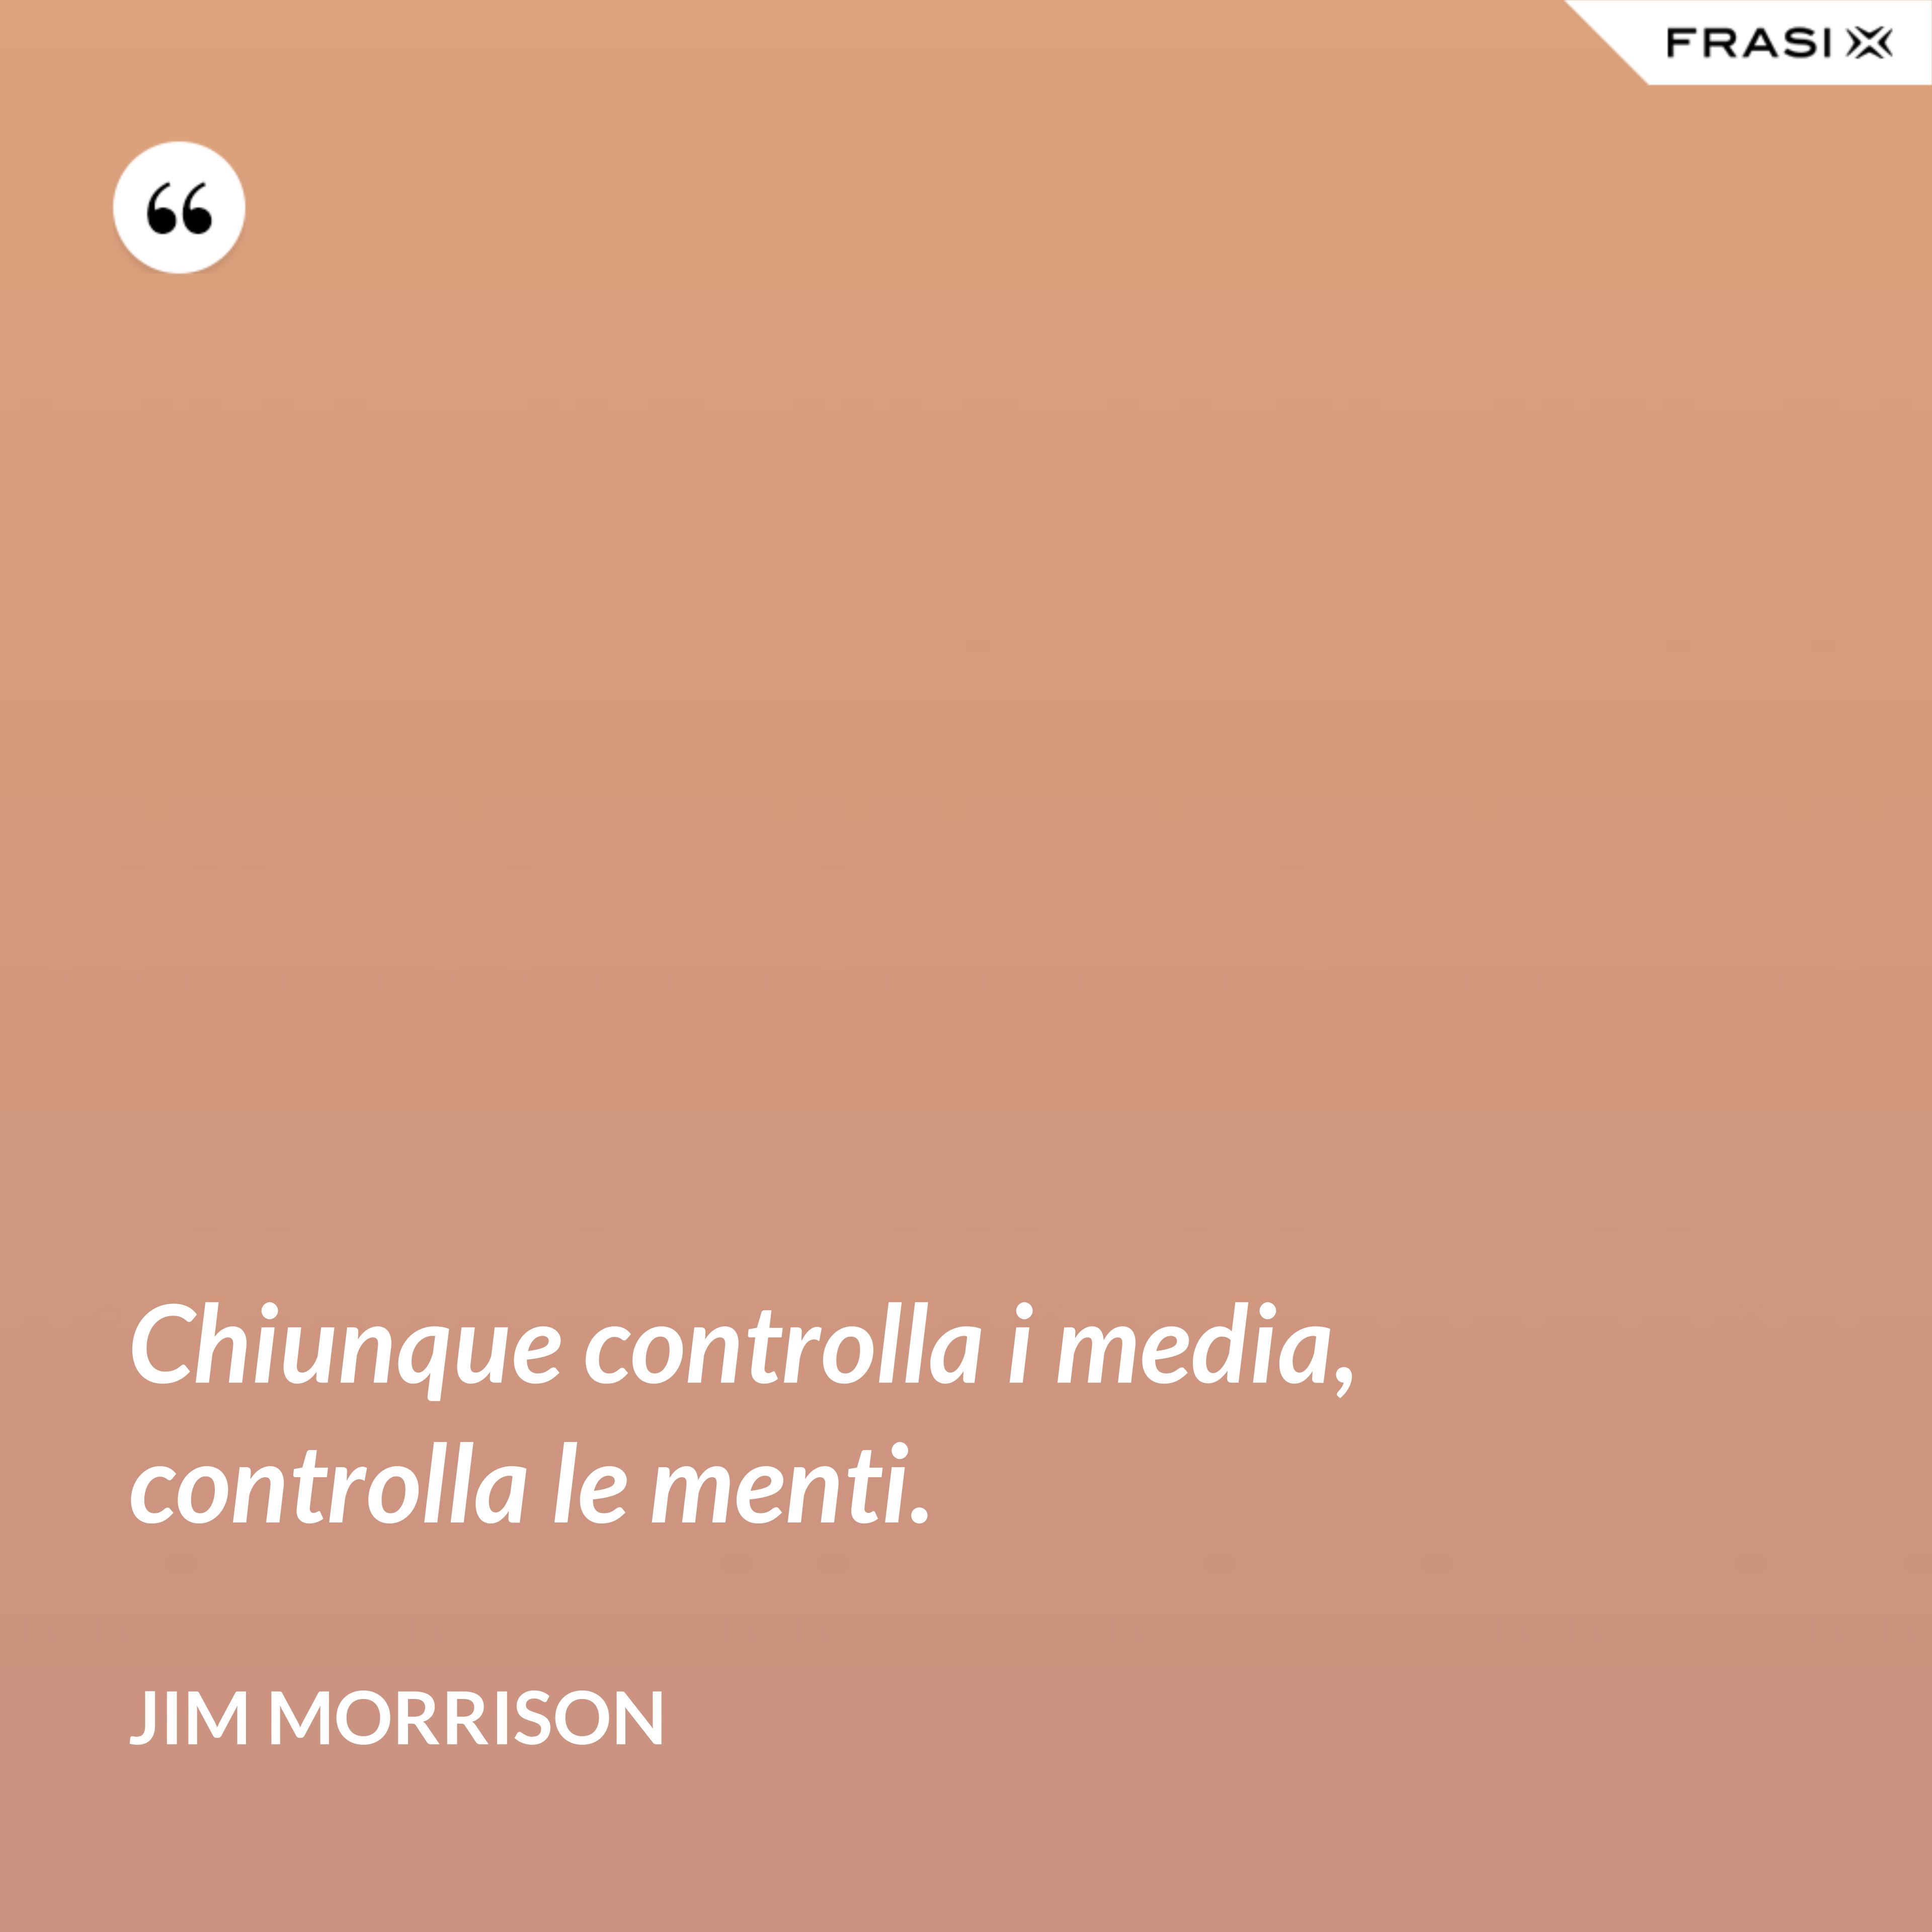 Chiunque controlla i media, controlla le menti. - Jim Morrison